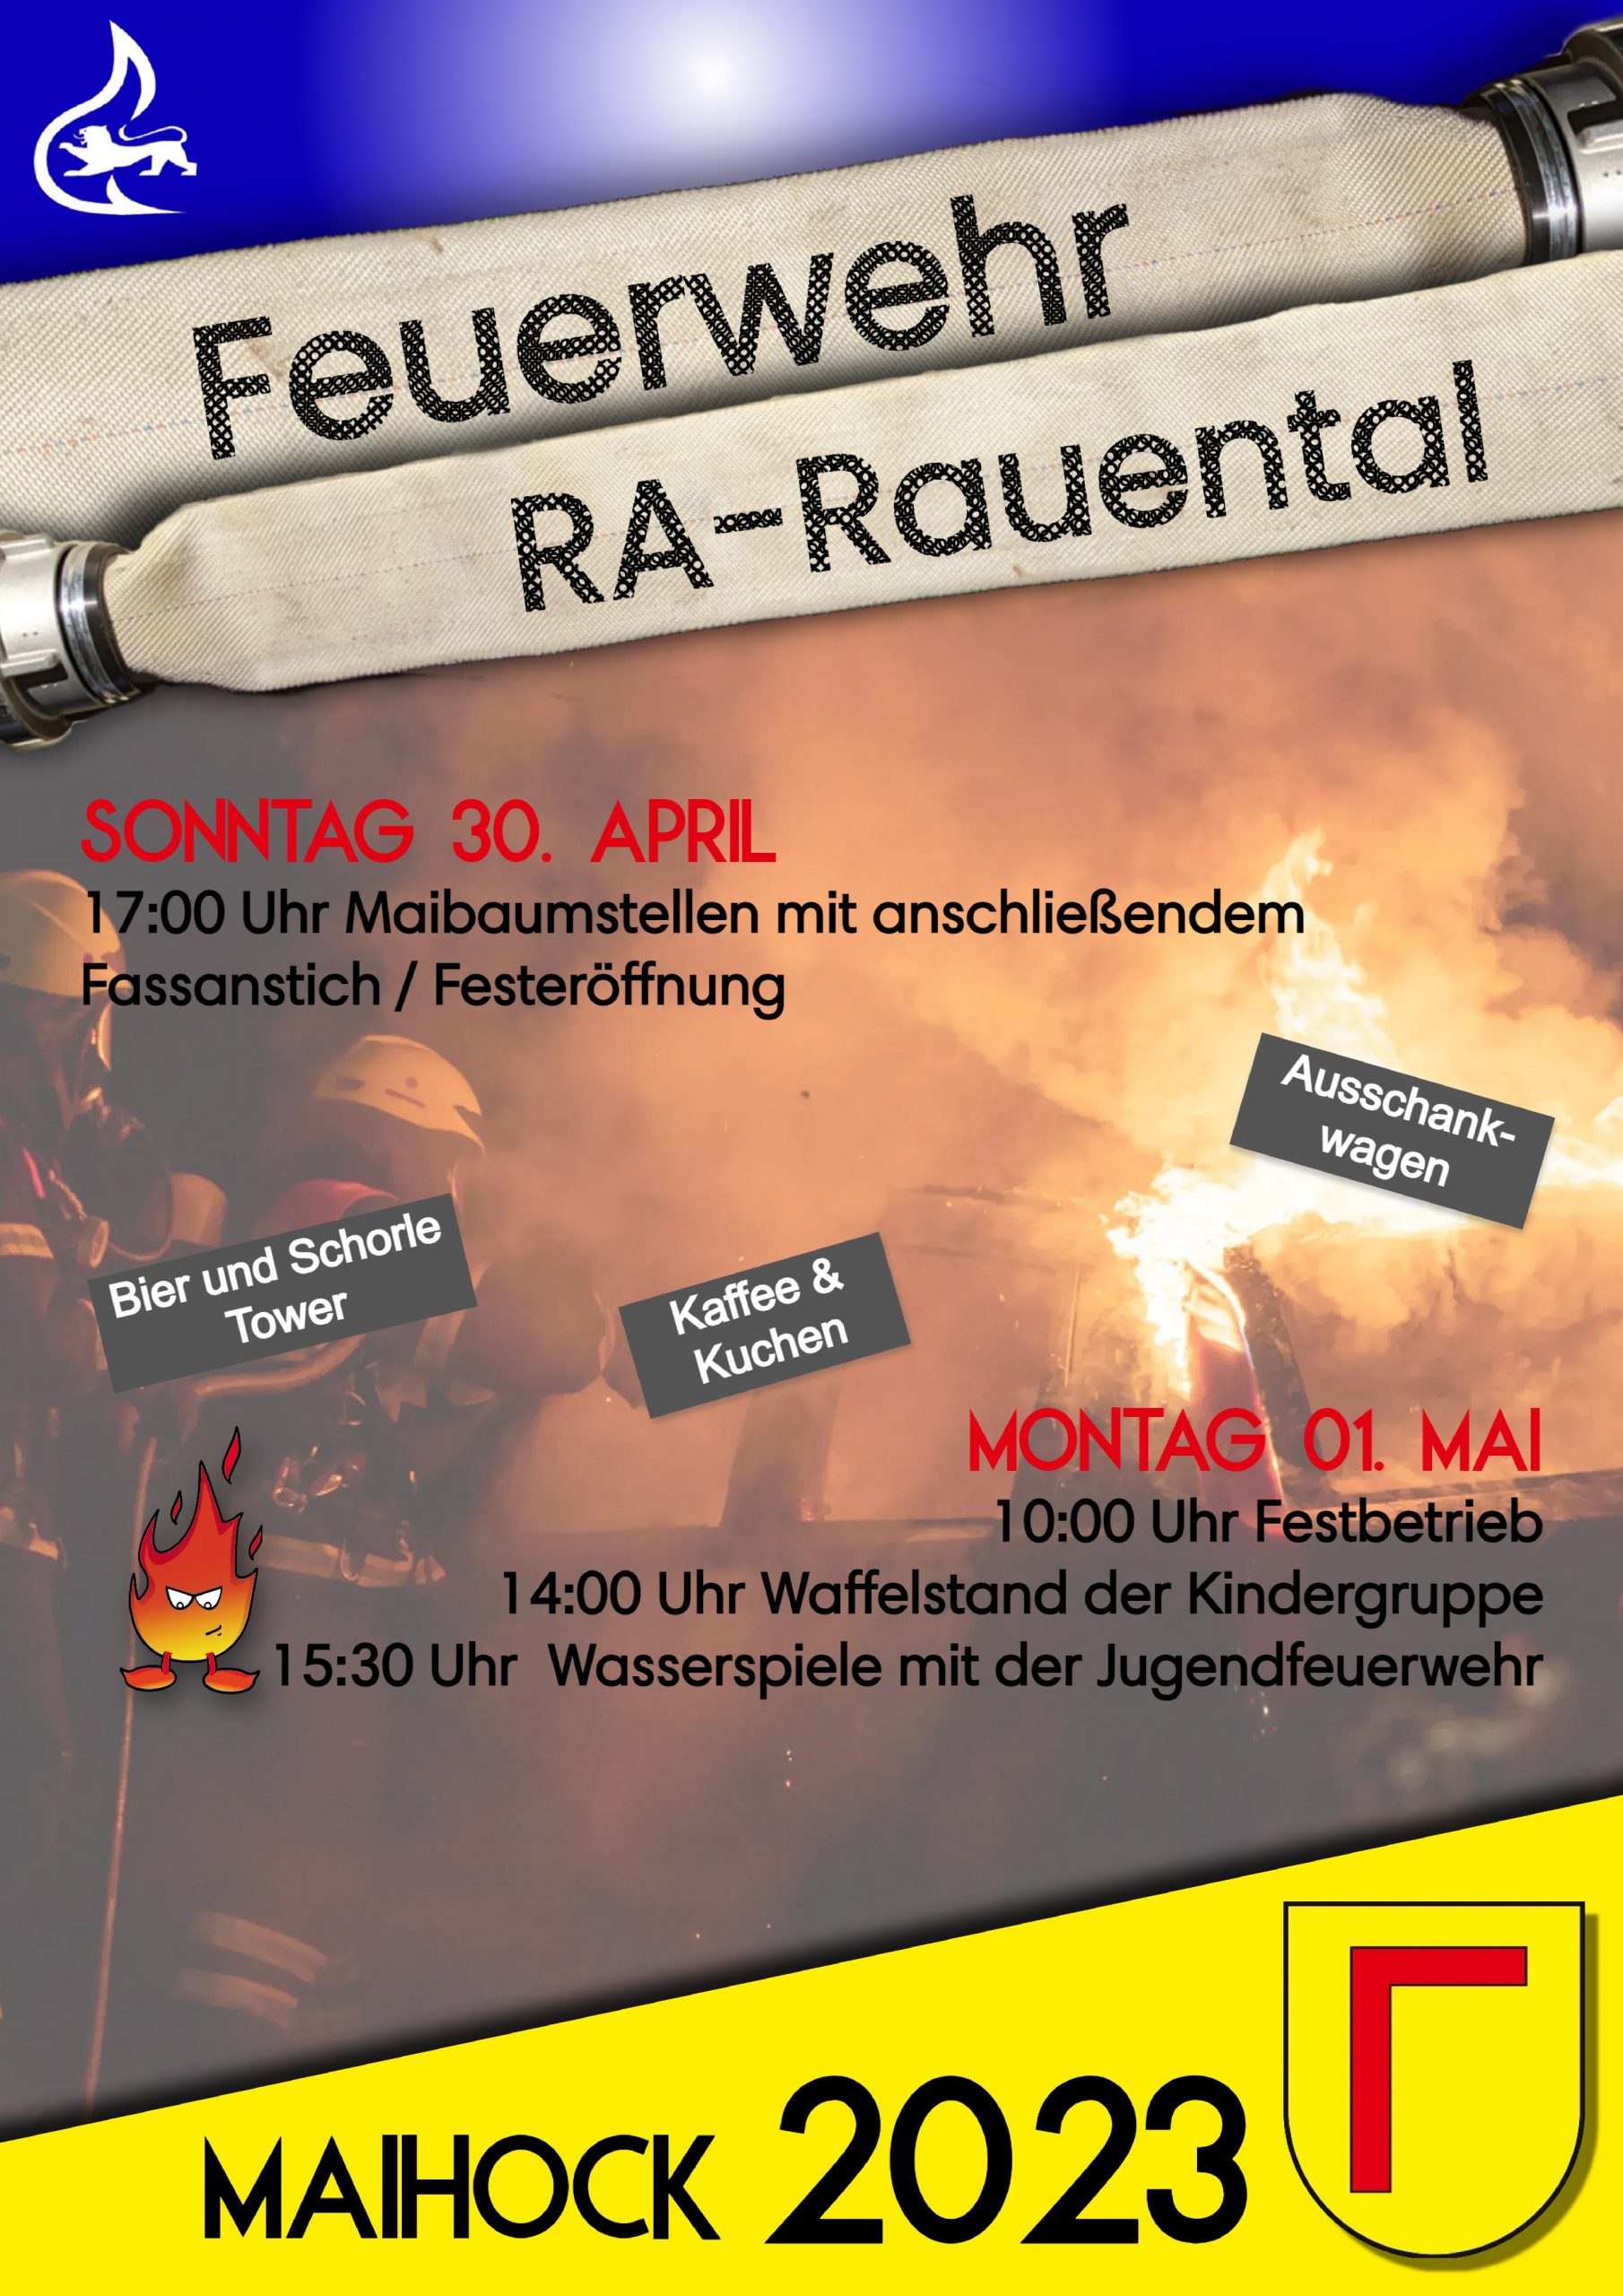 Maihock 2023 Feuerwehr Rastatt-Rauental